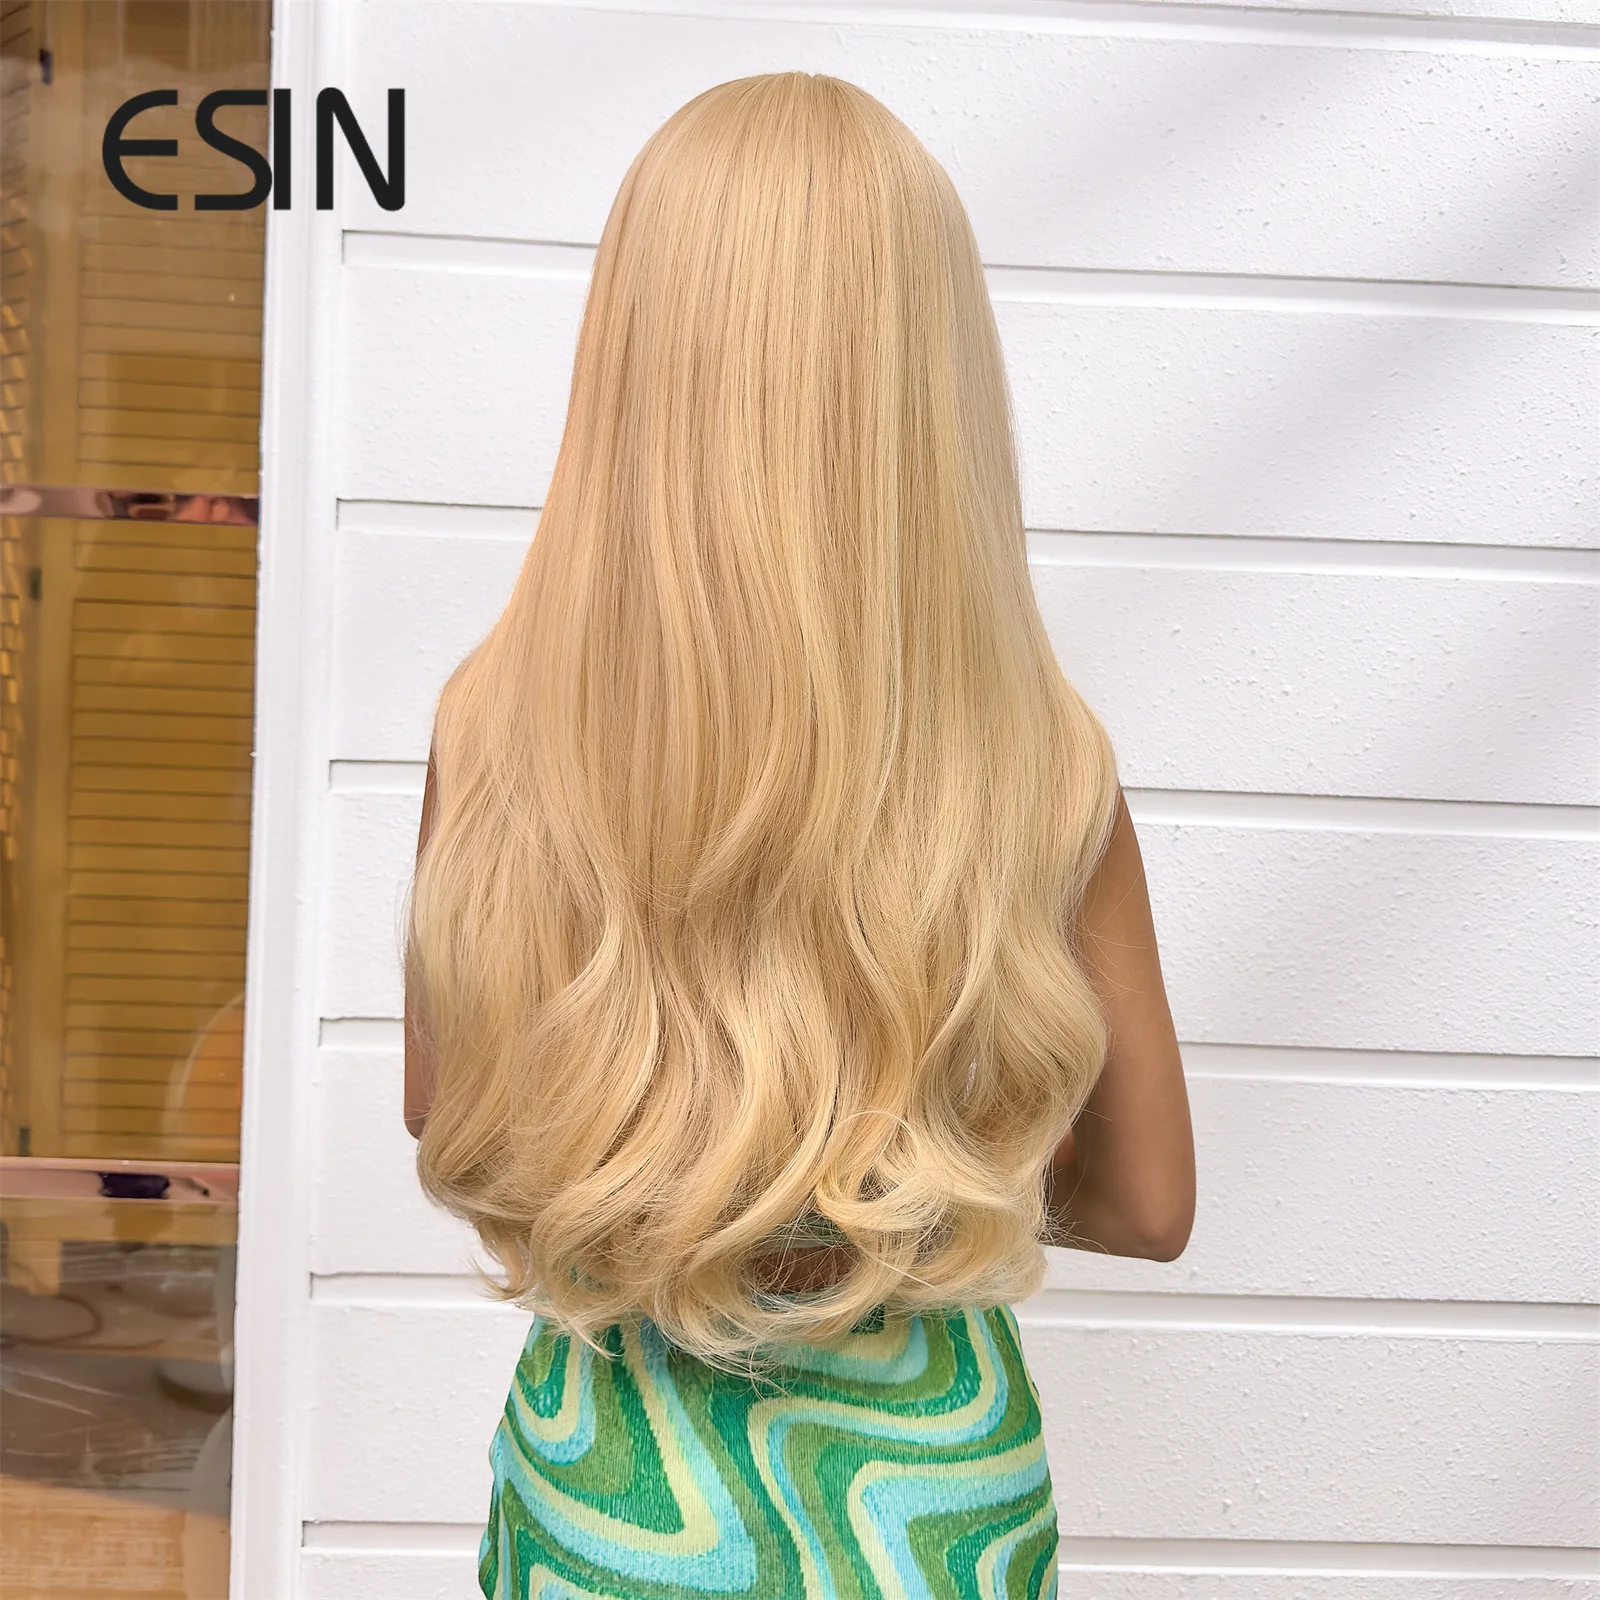 Бежевый синтетический парик ESIN Ombre с челкой - 100% плотность, подходящий для начинающих длинноволновый шиньончик для стильного и естественного образа Изображение 4